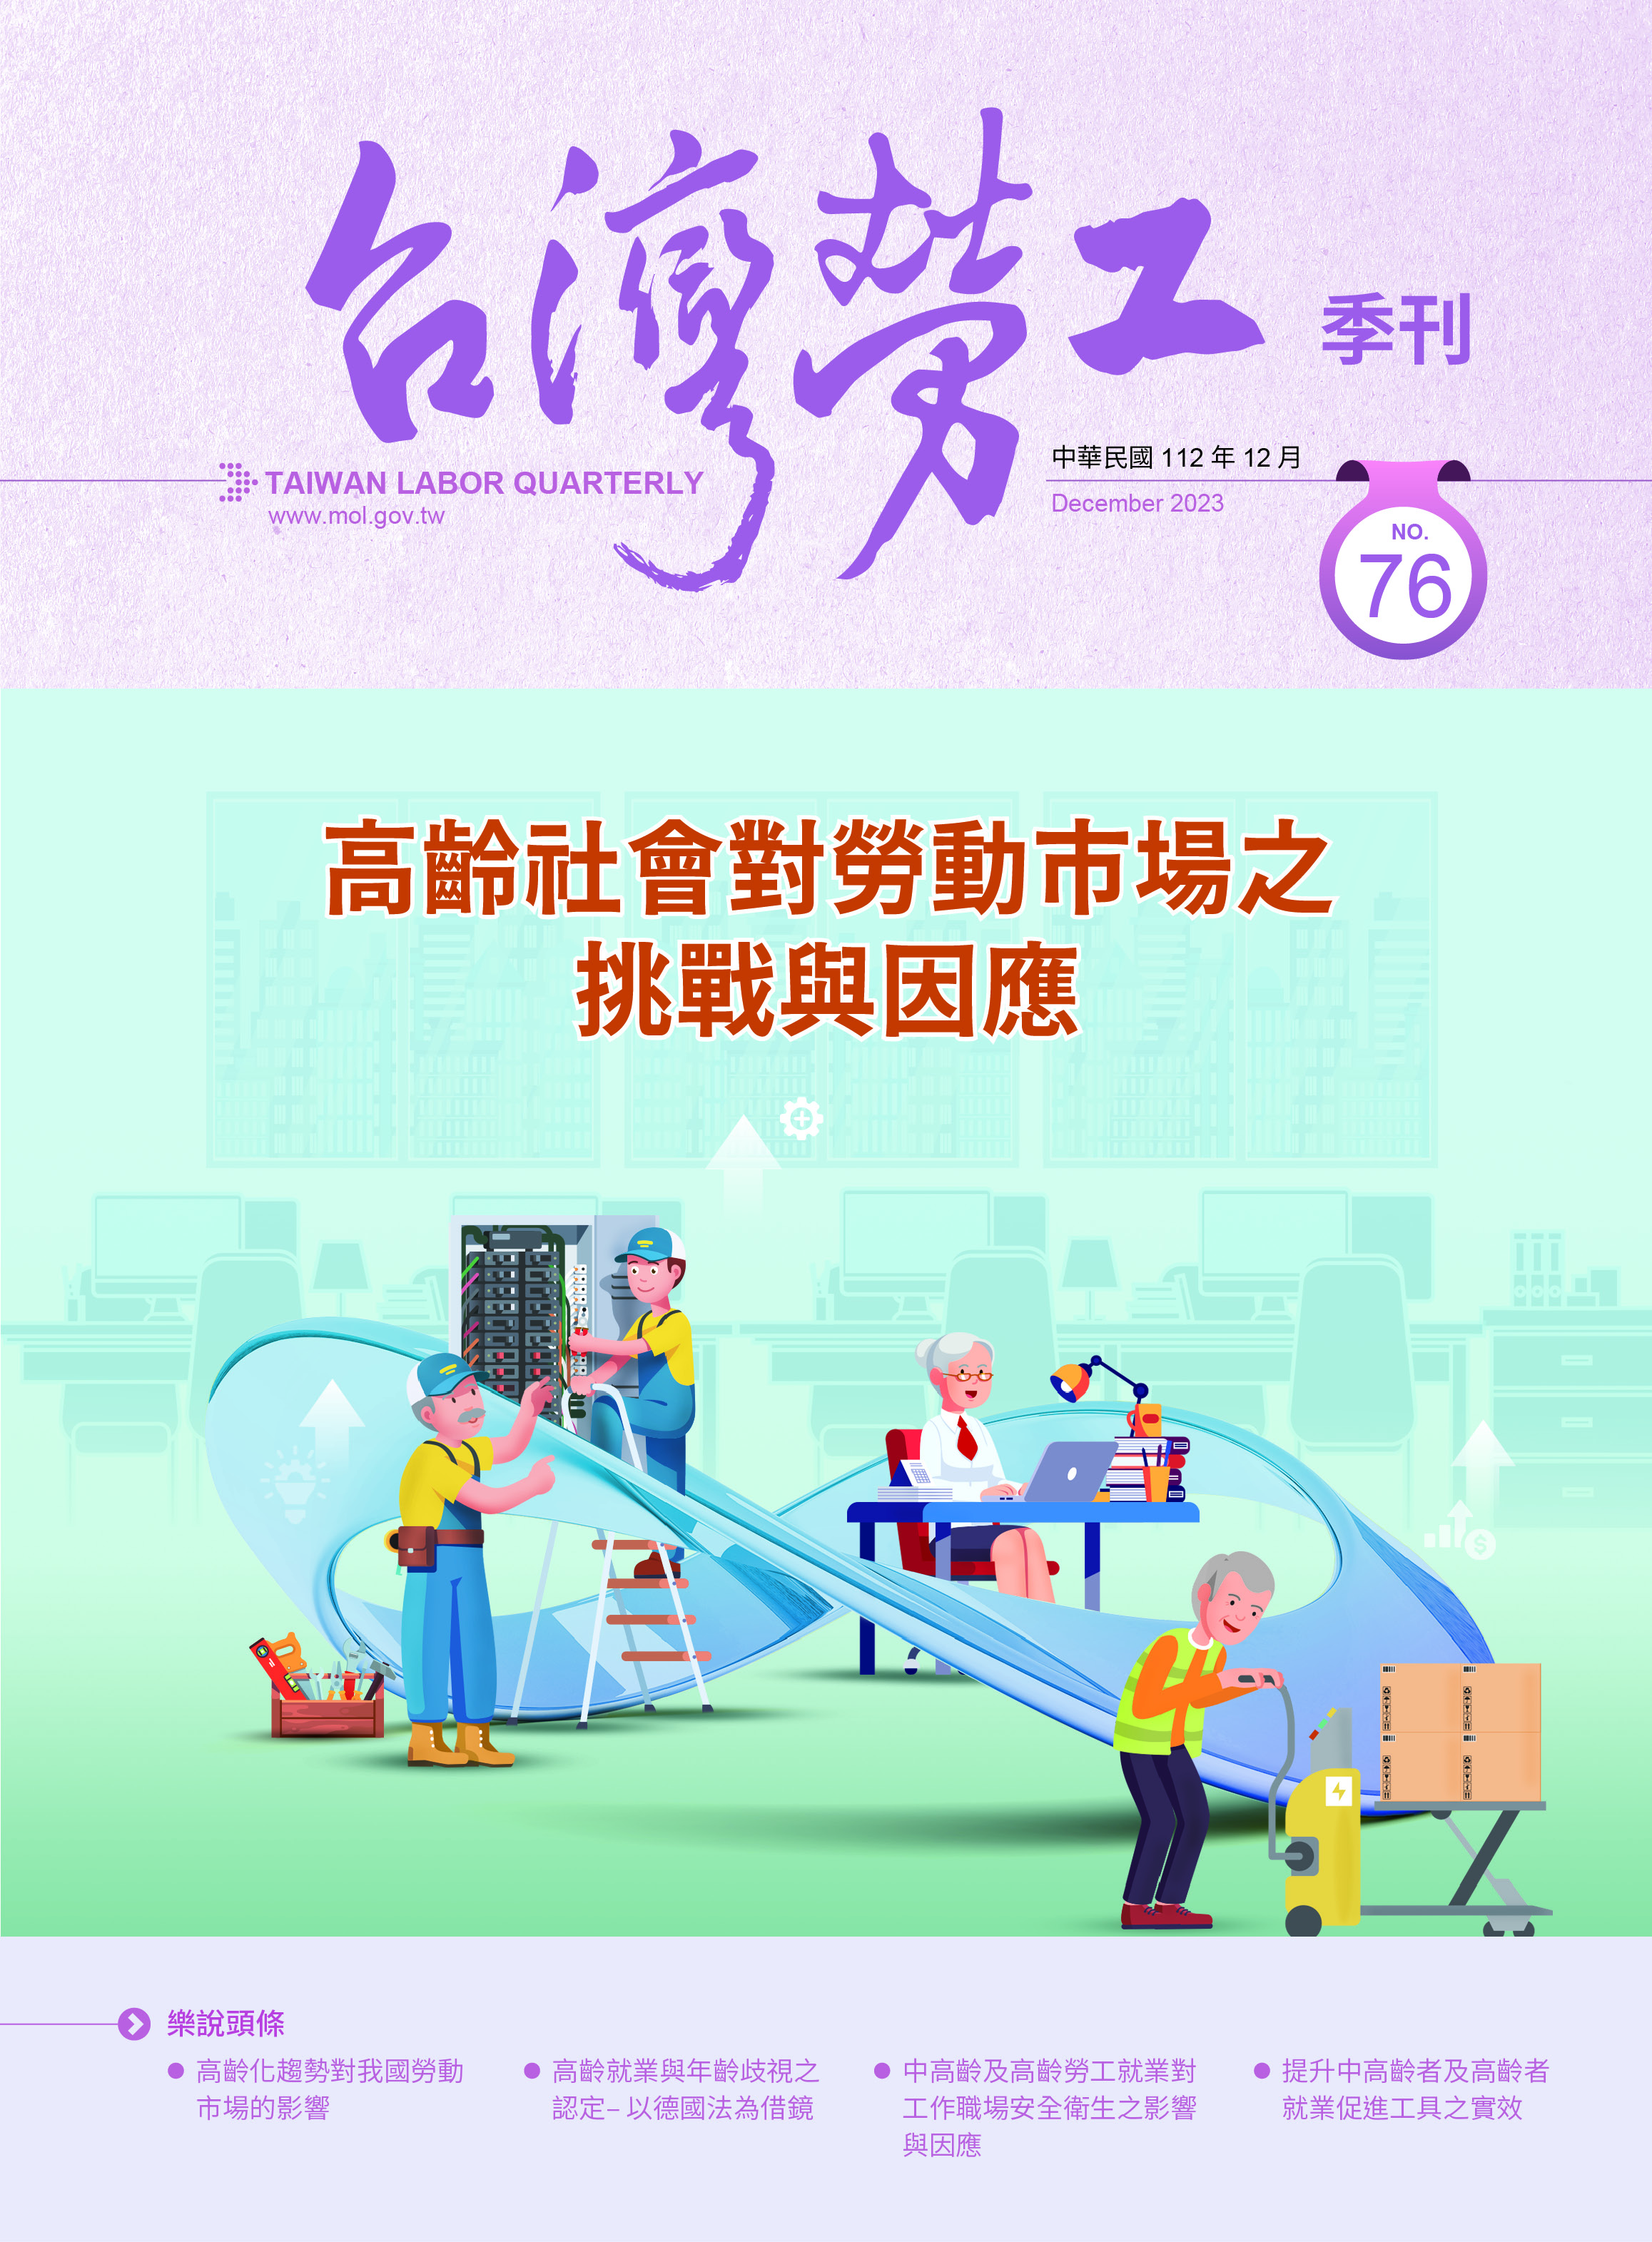 第76期-台灣勞工季刊 展示圖